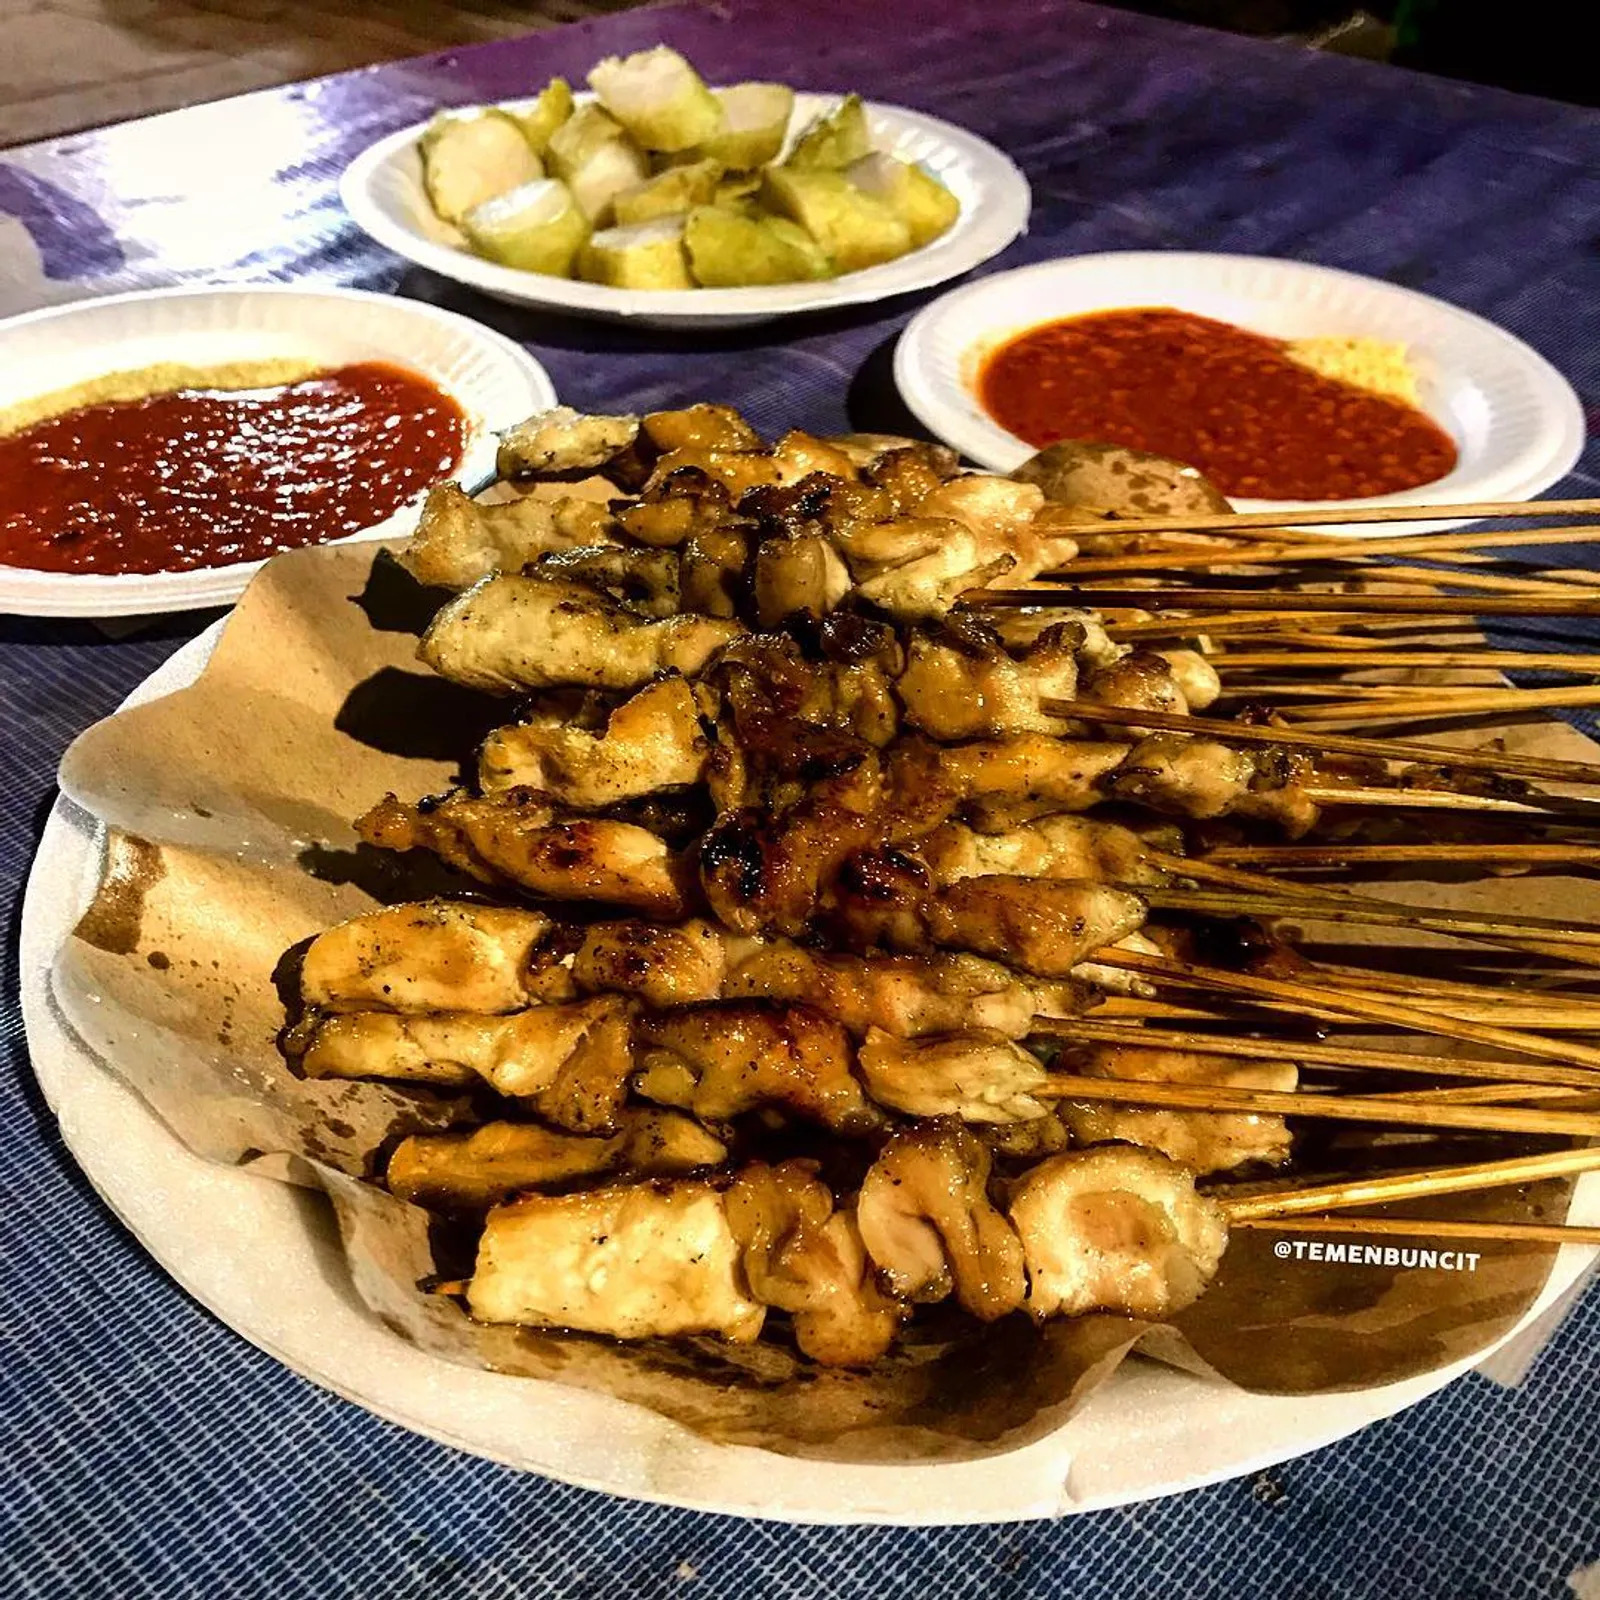 7 Rekomendasi Tempat Makan Sate Enak di Jakarta, Wajib Coba!